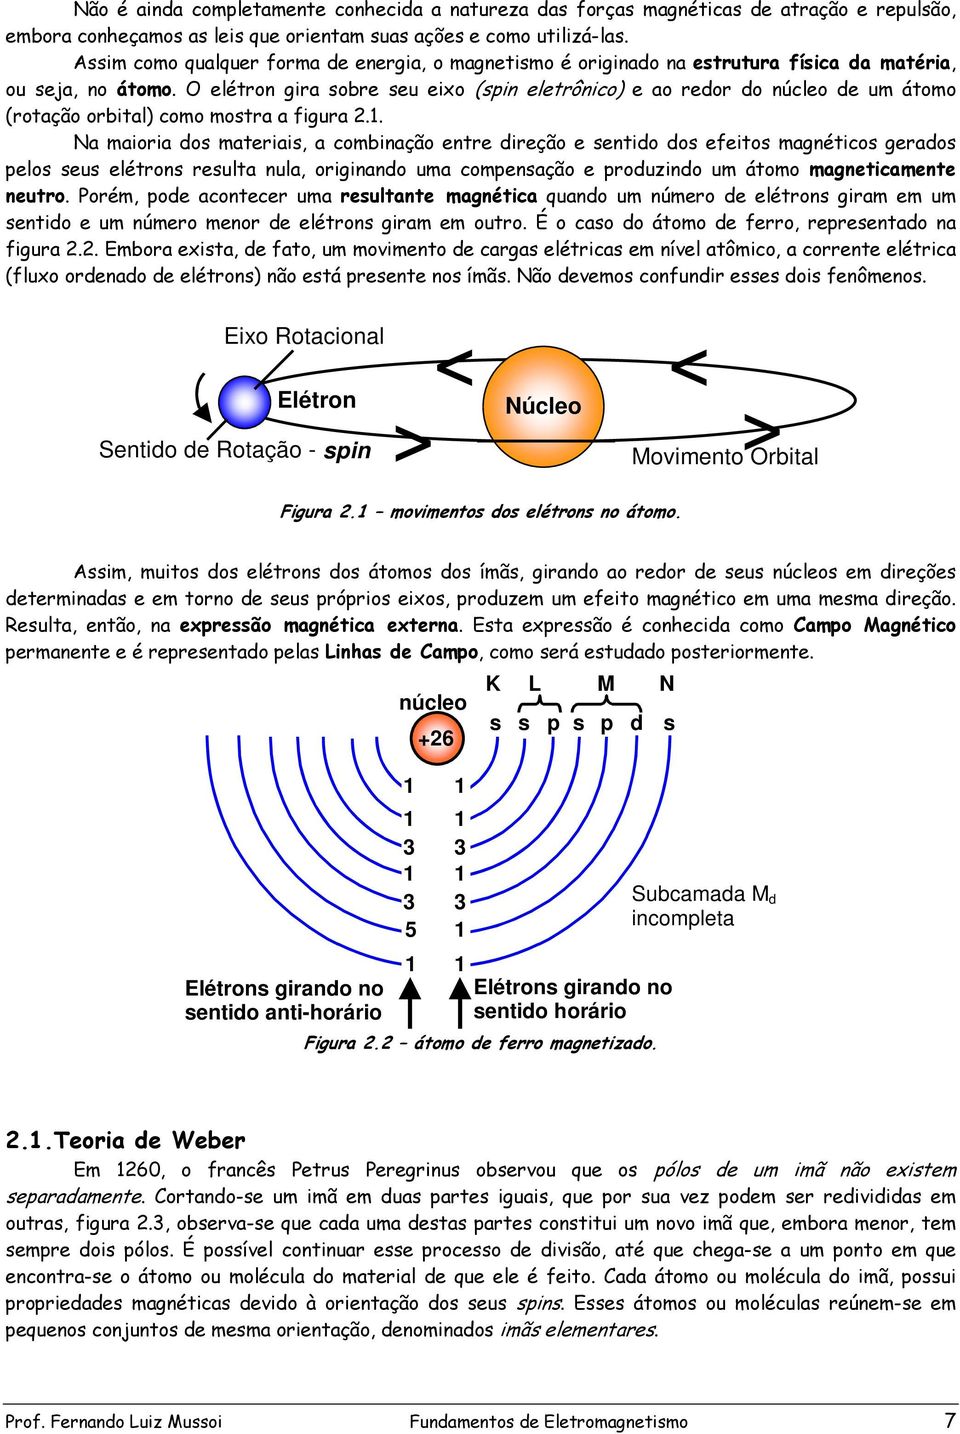 O elétron gira sobre seu eixo (spin eletrônico) e ao redor do núcleo de um átomo (rotação orbital) como mostra a figura 2.1.